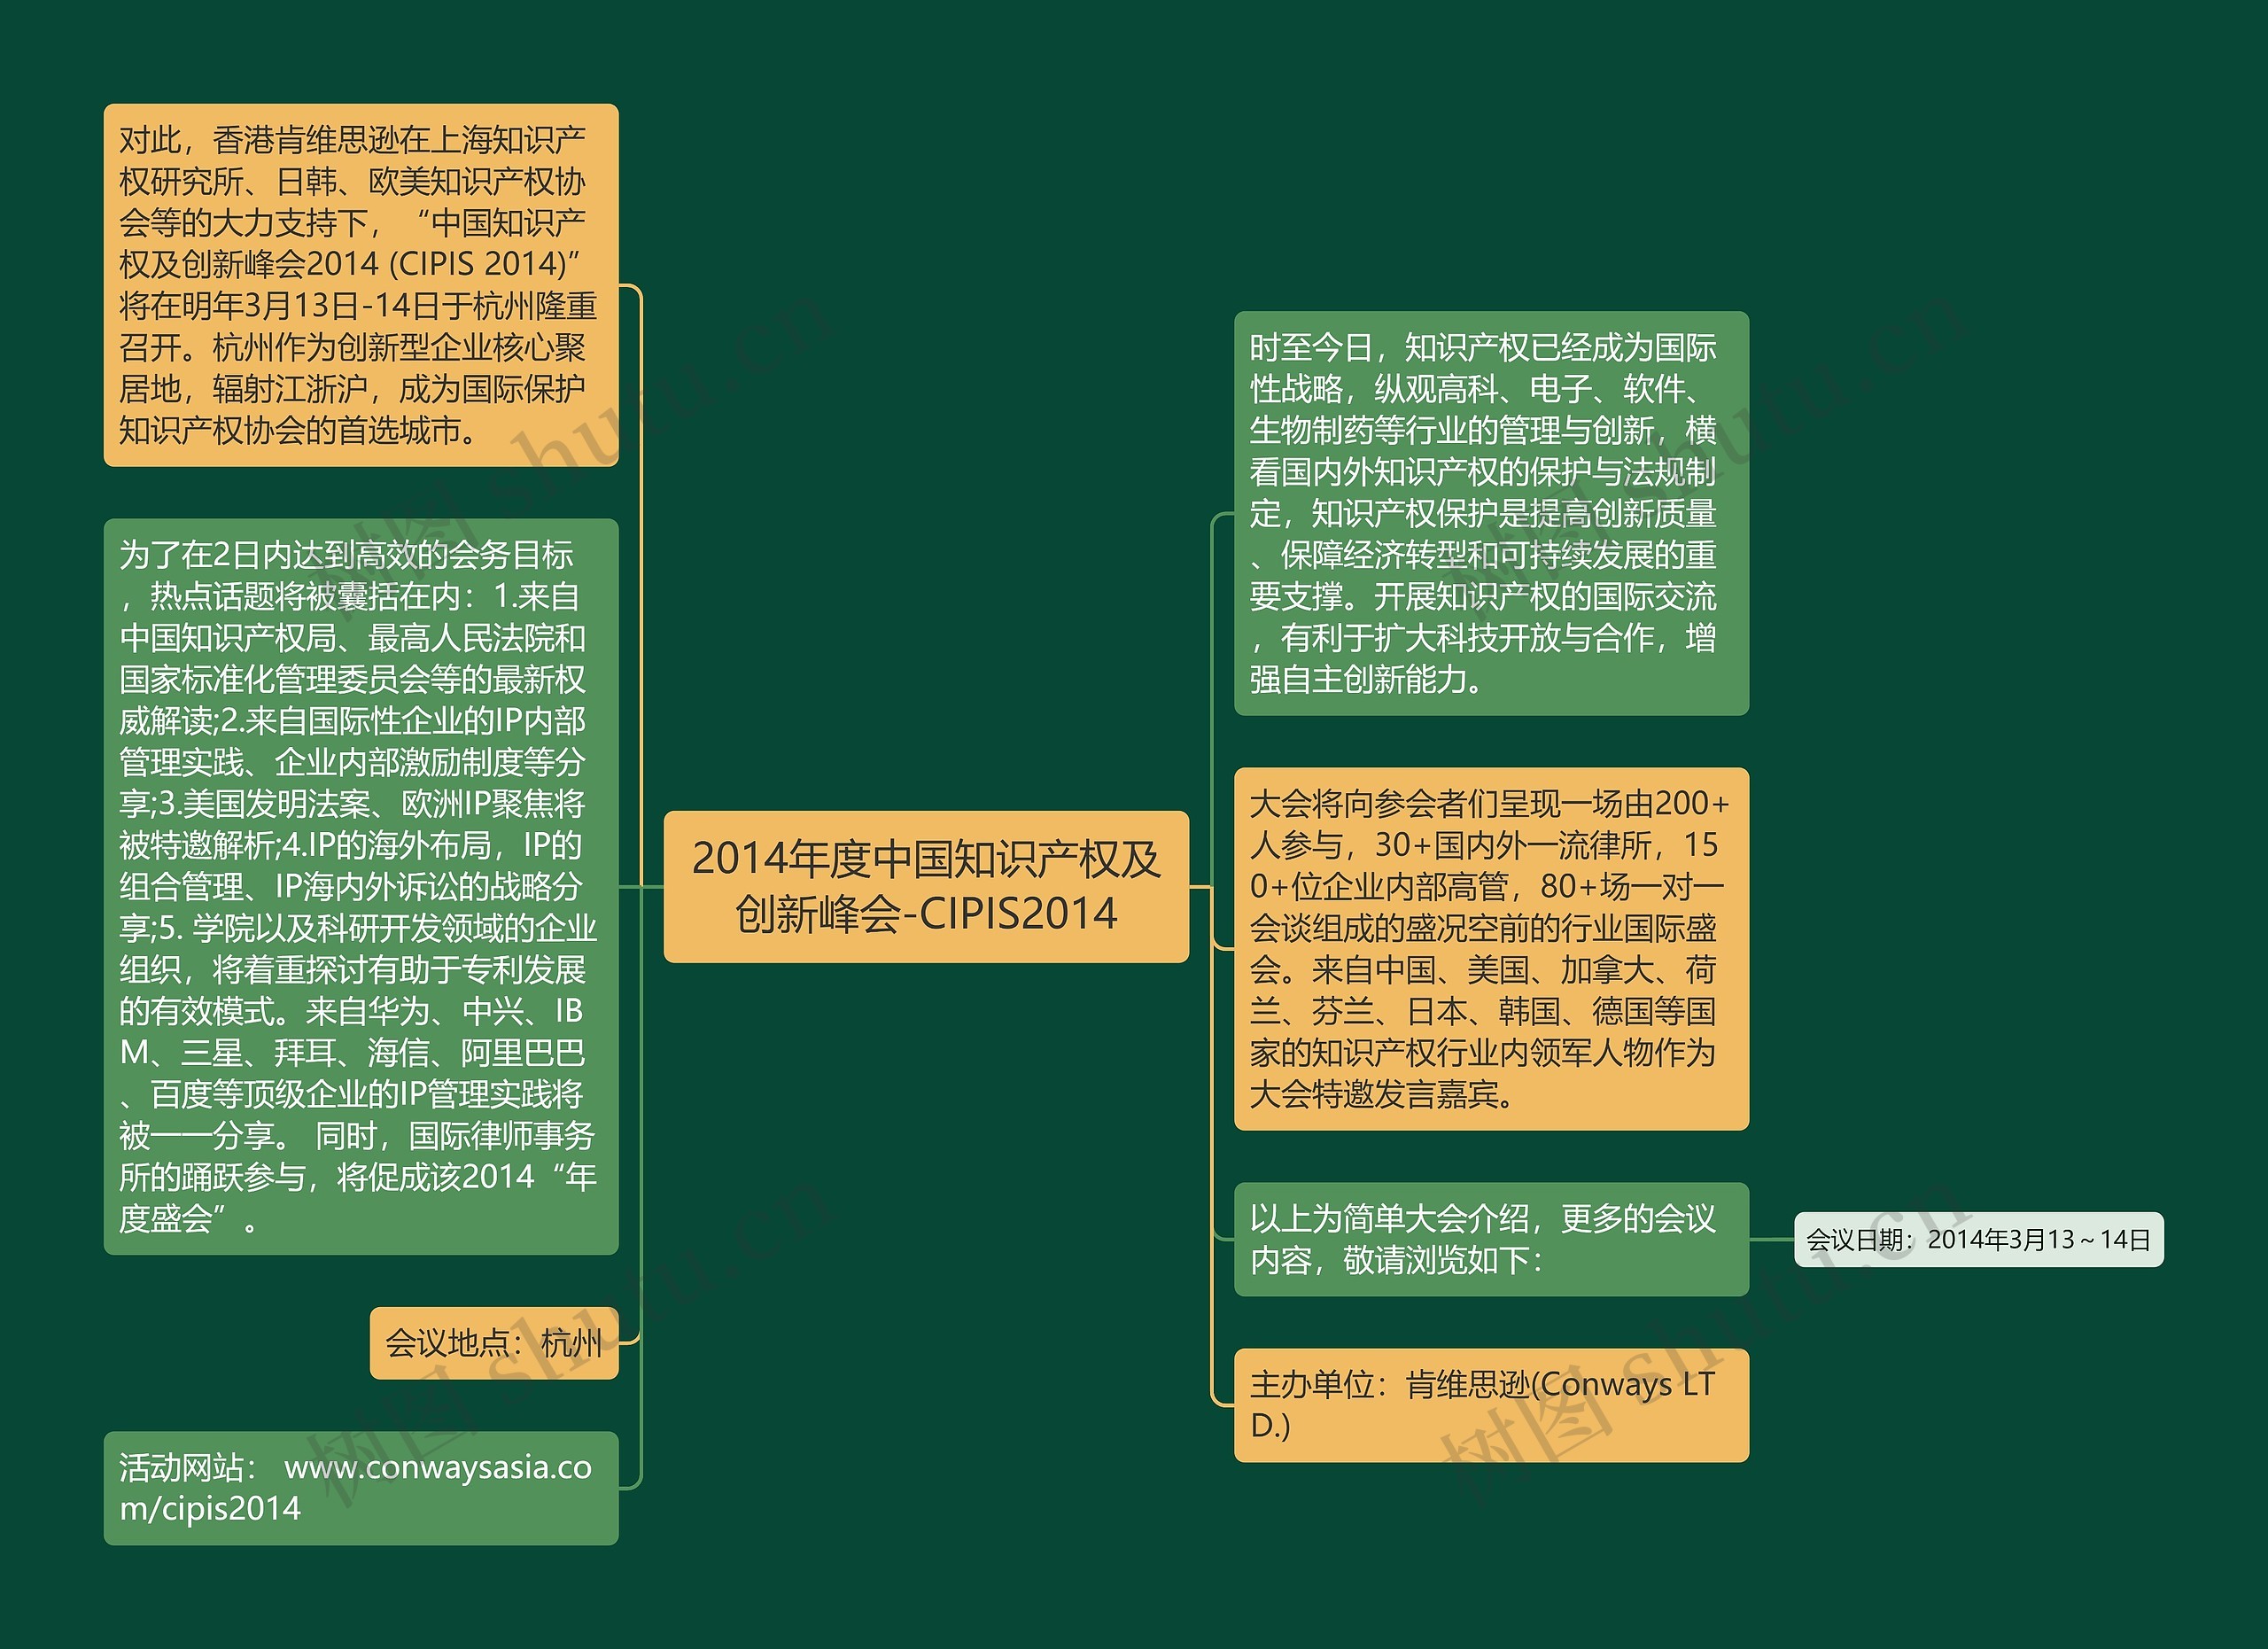 2014年度中国知识产权及创新峰会-CIPIS2014思维导图